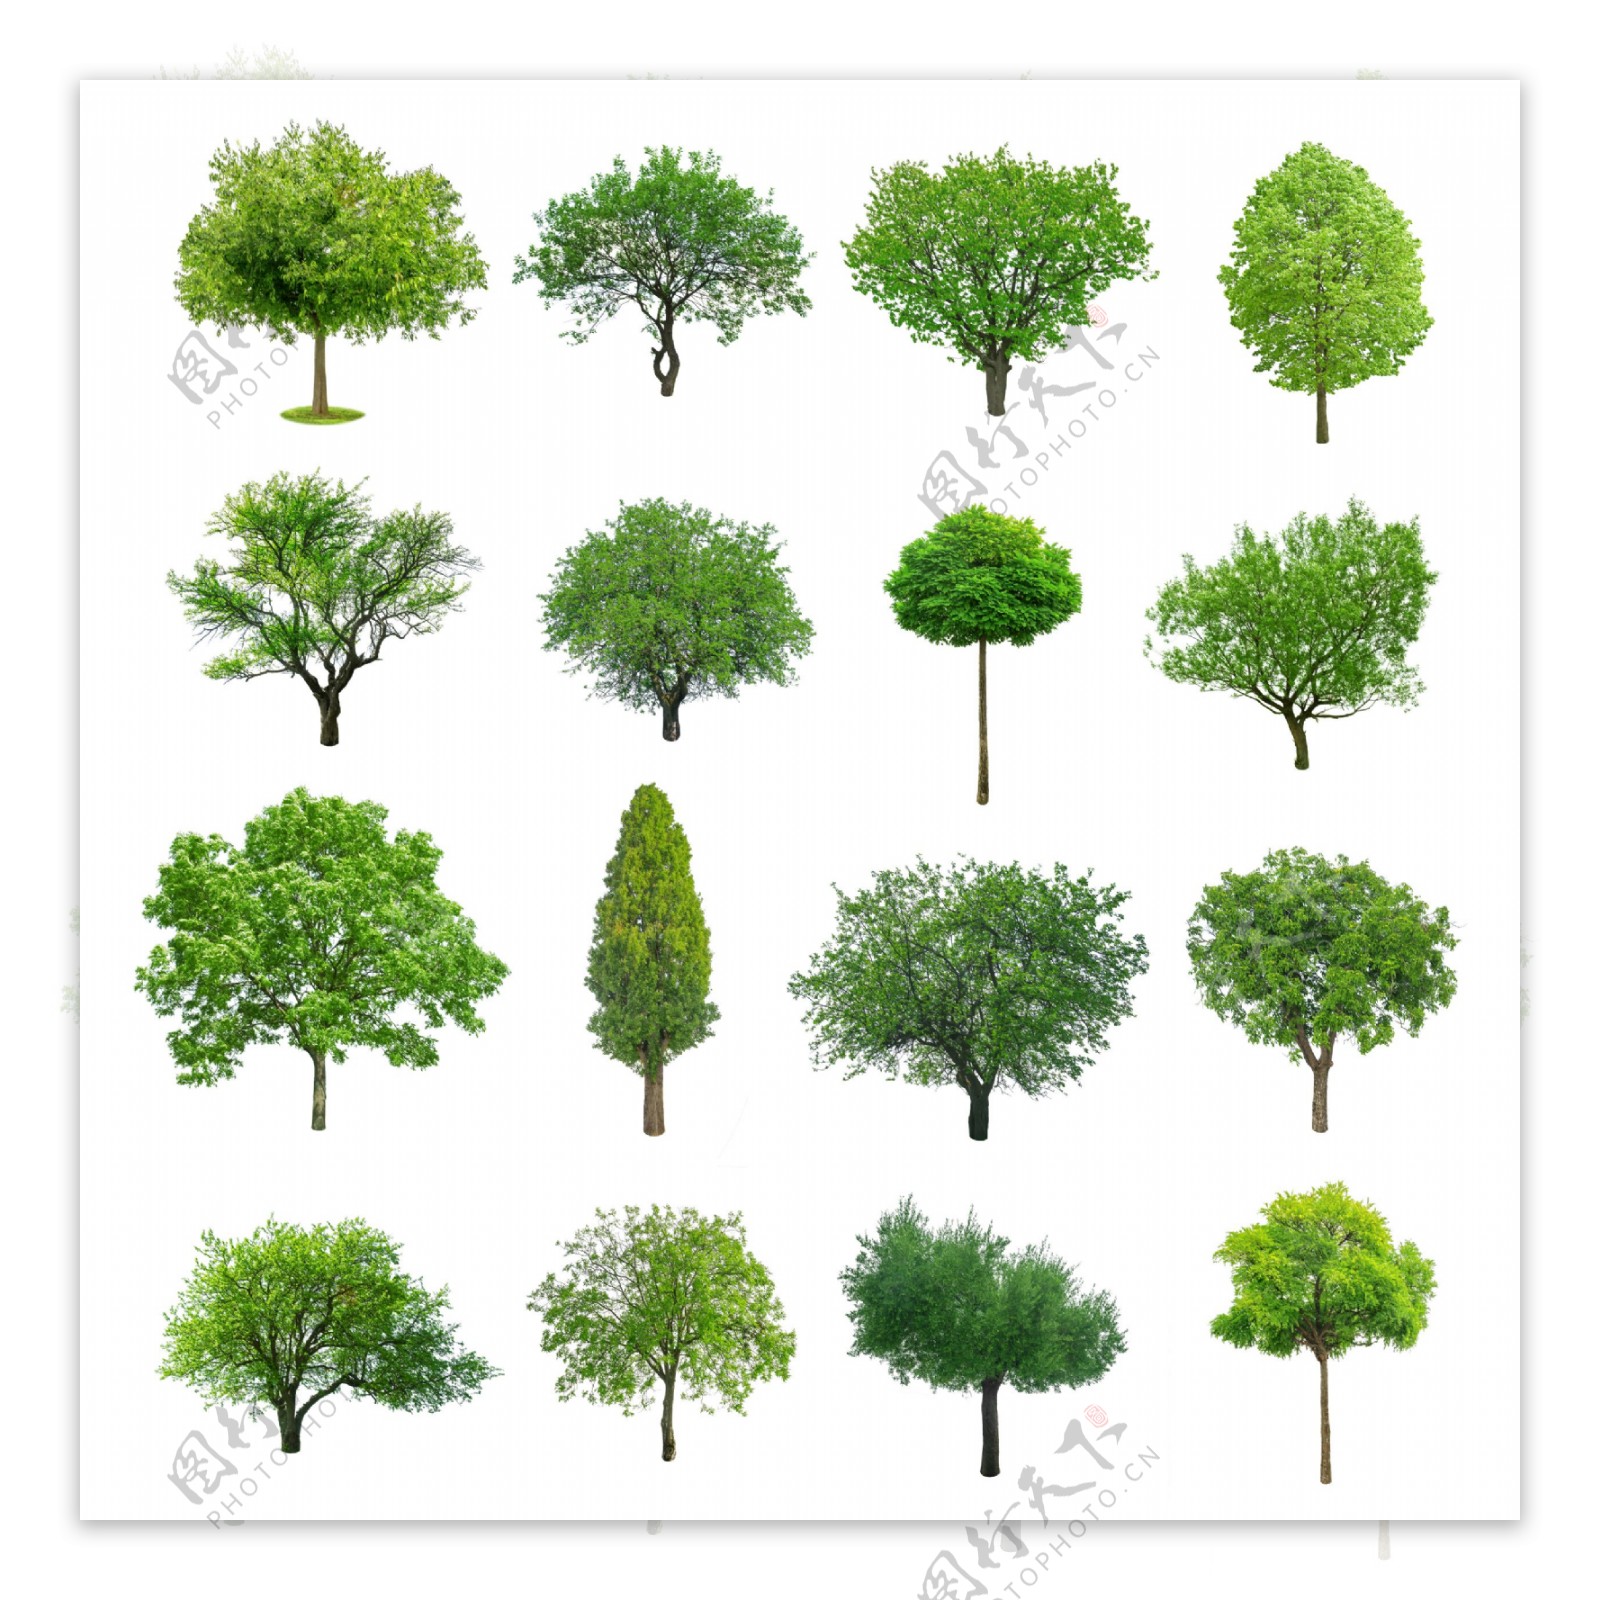 不同形态的树木图片